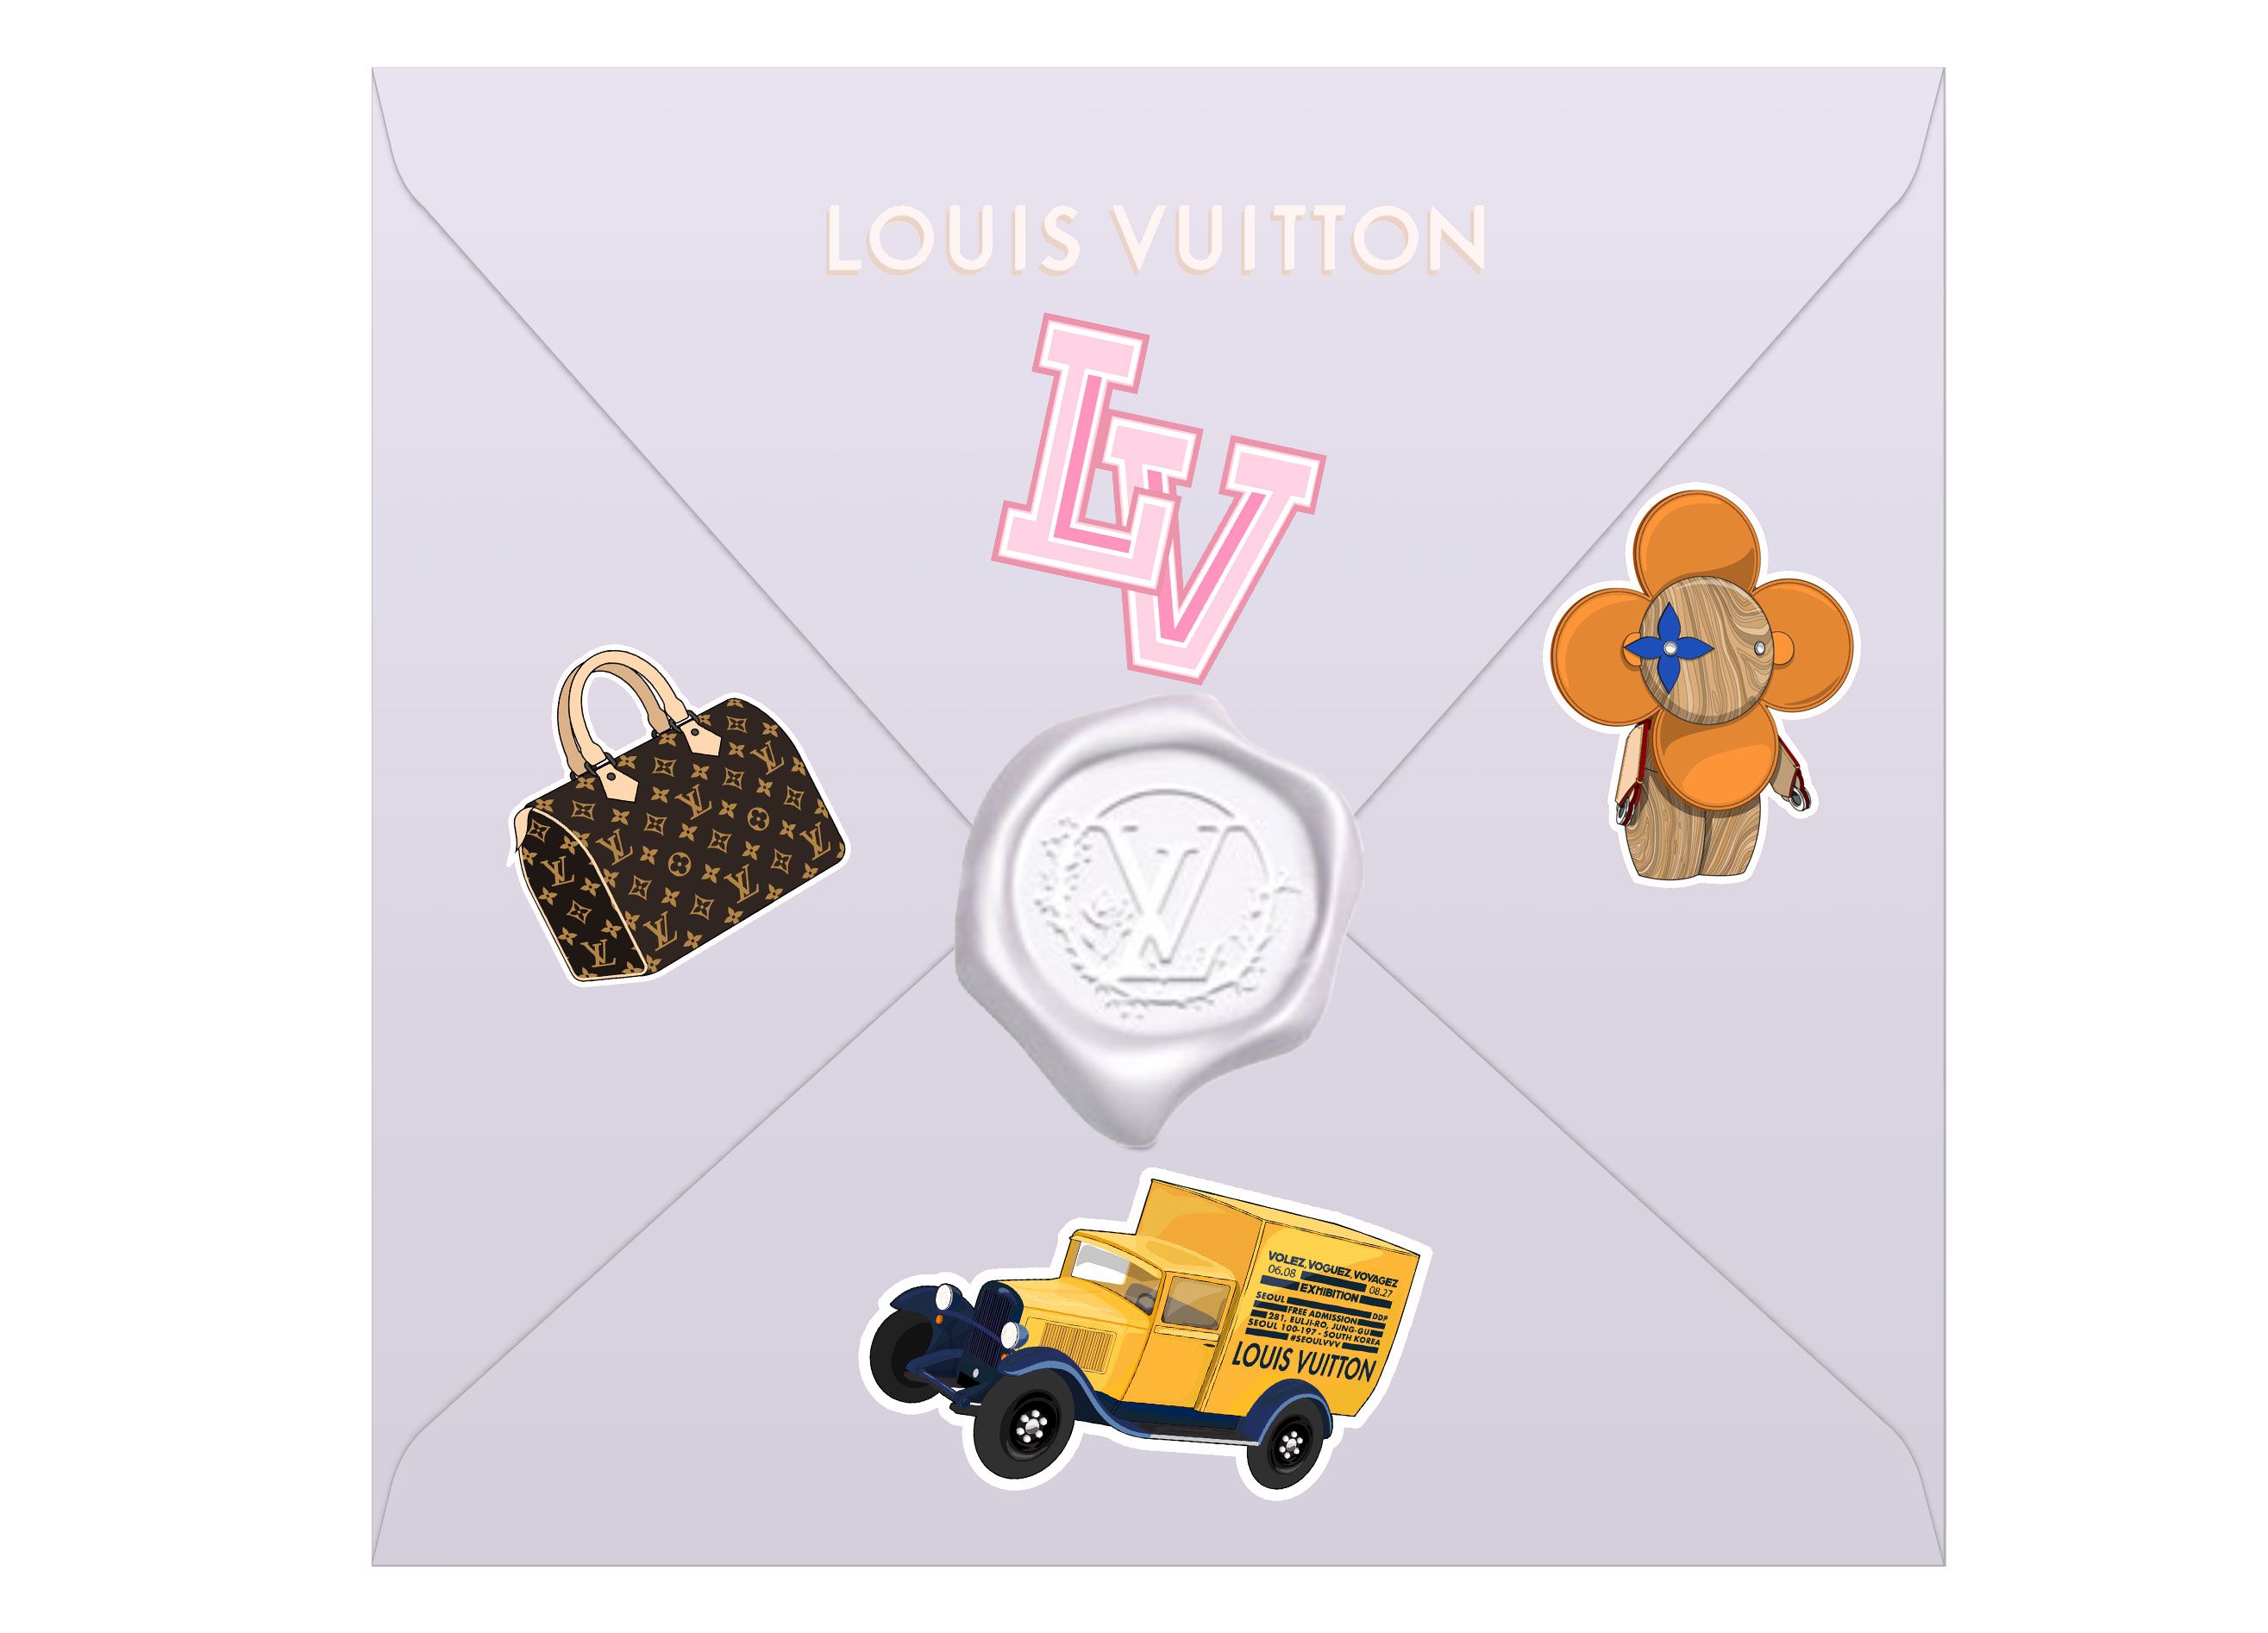 Volez, Voguez, Voyagez: The Weird and Wonderful History of Louis Vuitton -  FASHION Magazine